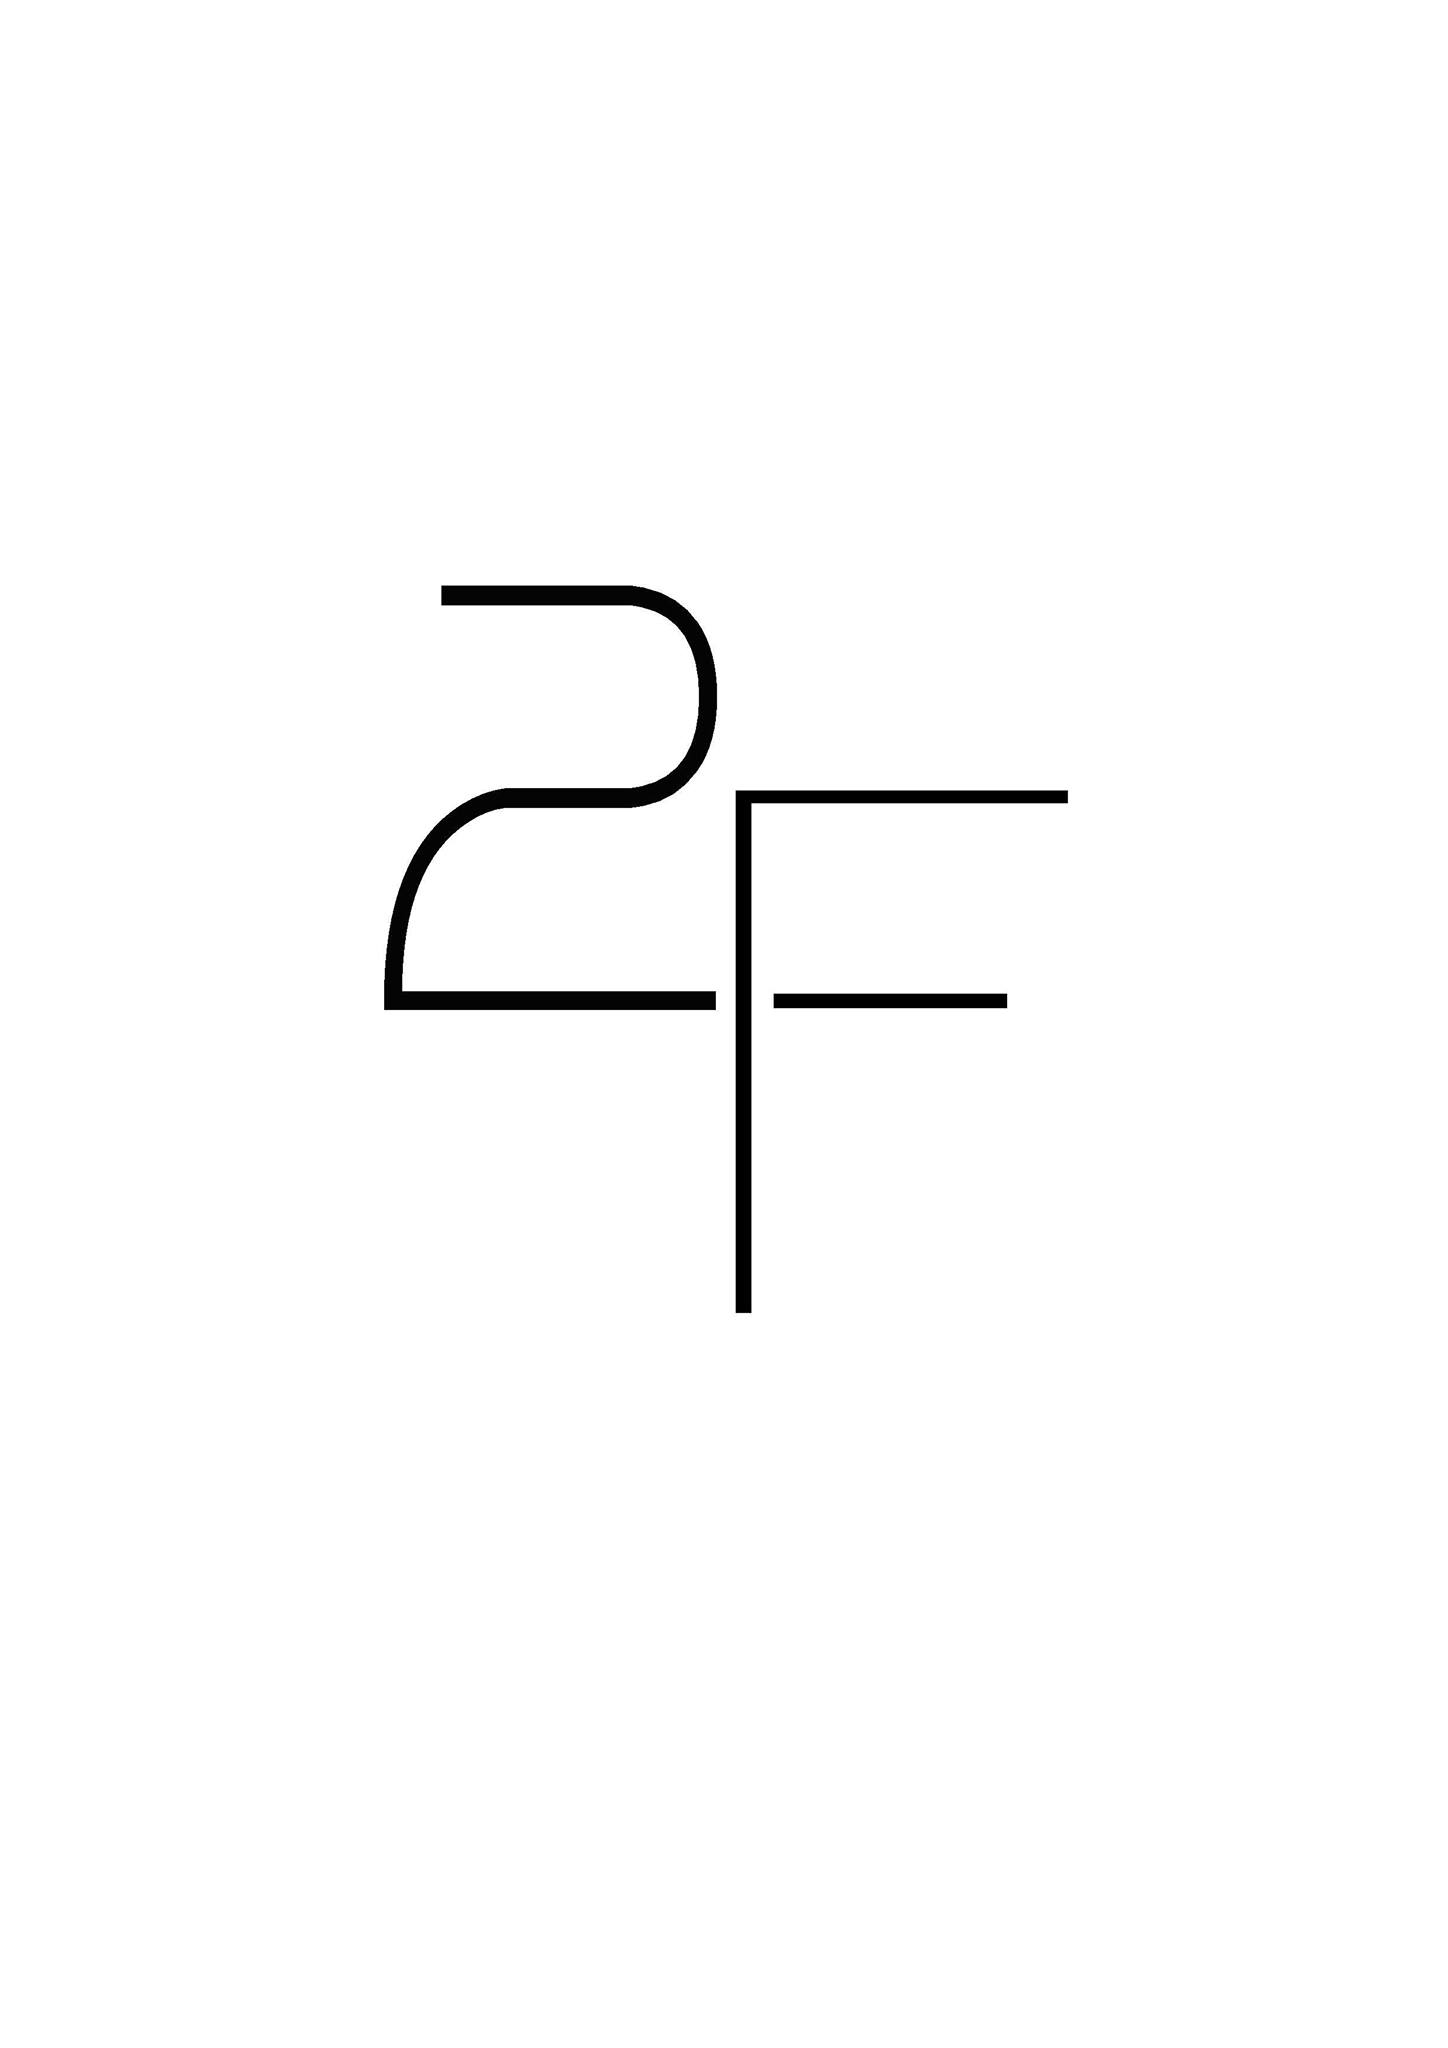 Logo de 2f Batiment, société de travaux en Maçonnerie : construction de murs, cloisons, murage de porte